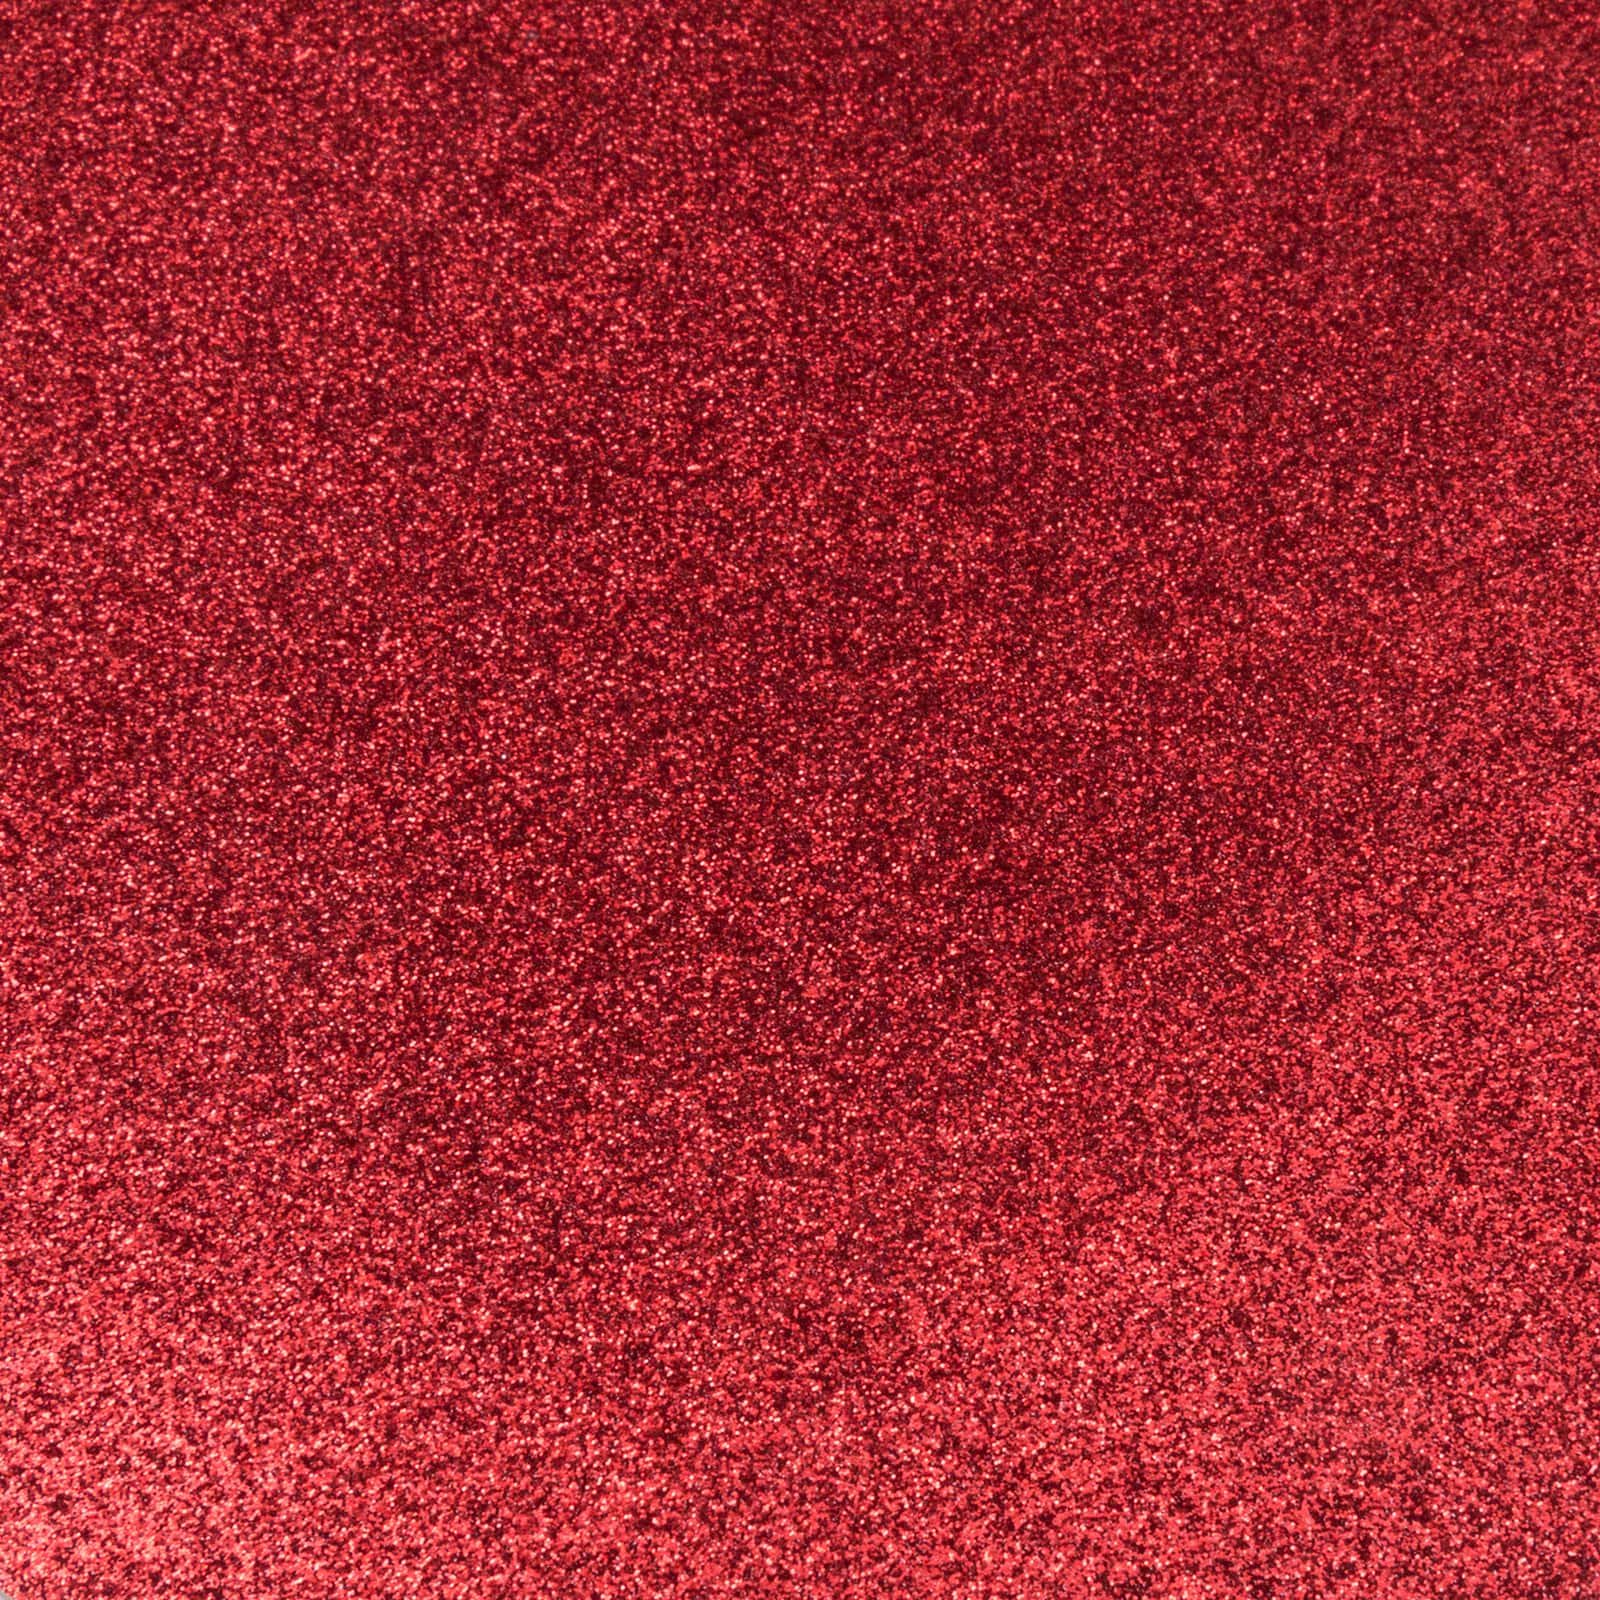 Red Fine Glitter Fabric Sheet A4 or A5 Sheet Fine Red Glitter Fabric